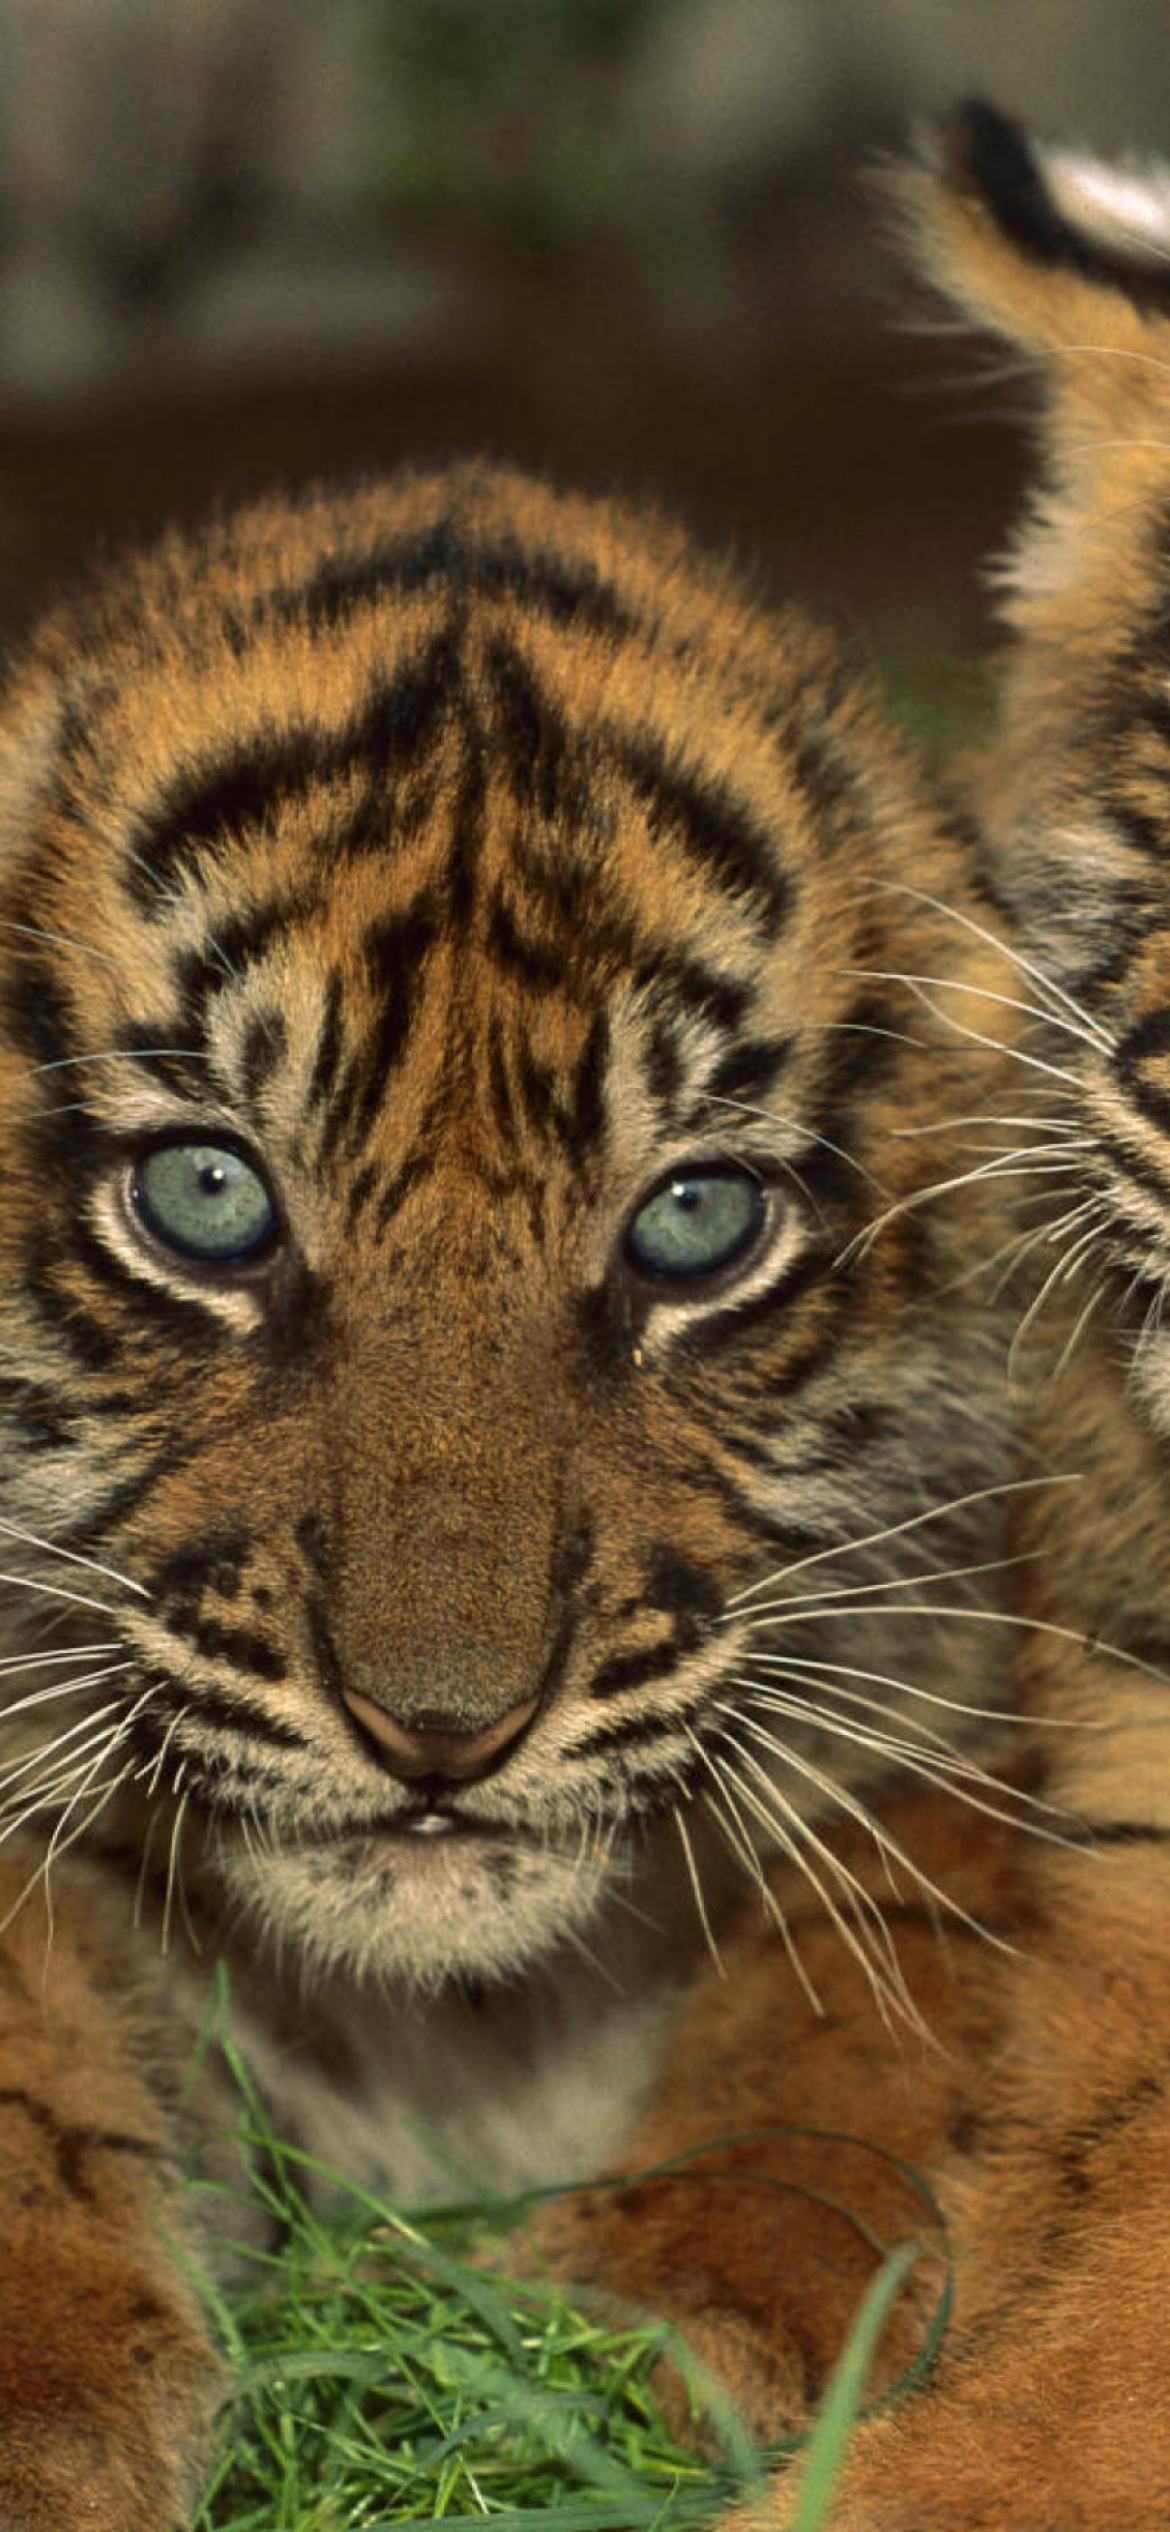 Обои Tiger Cubs 1170x2532